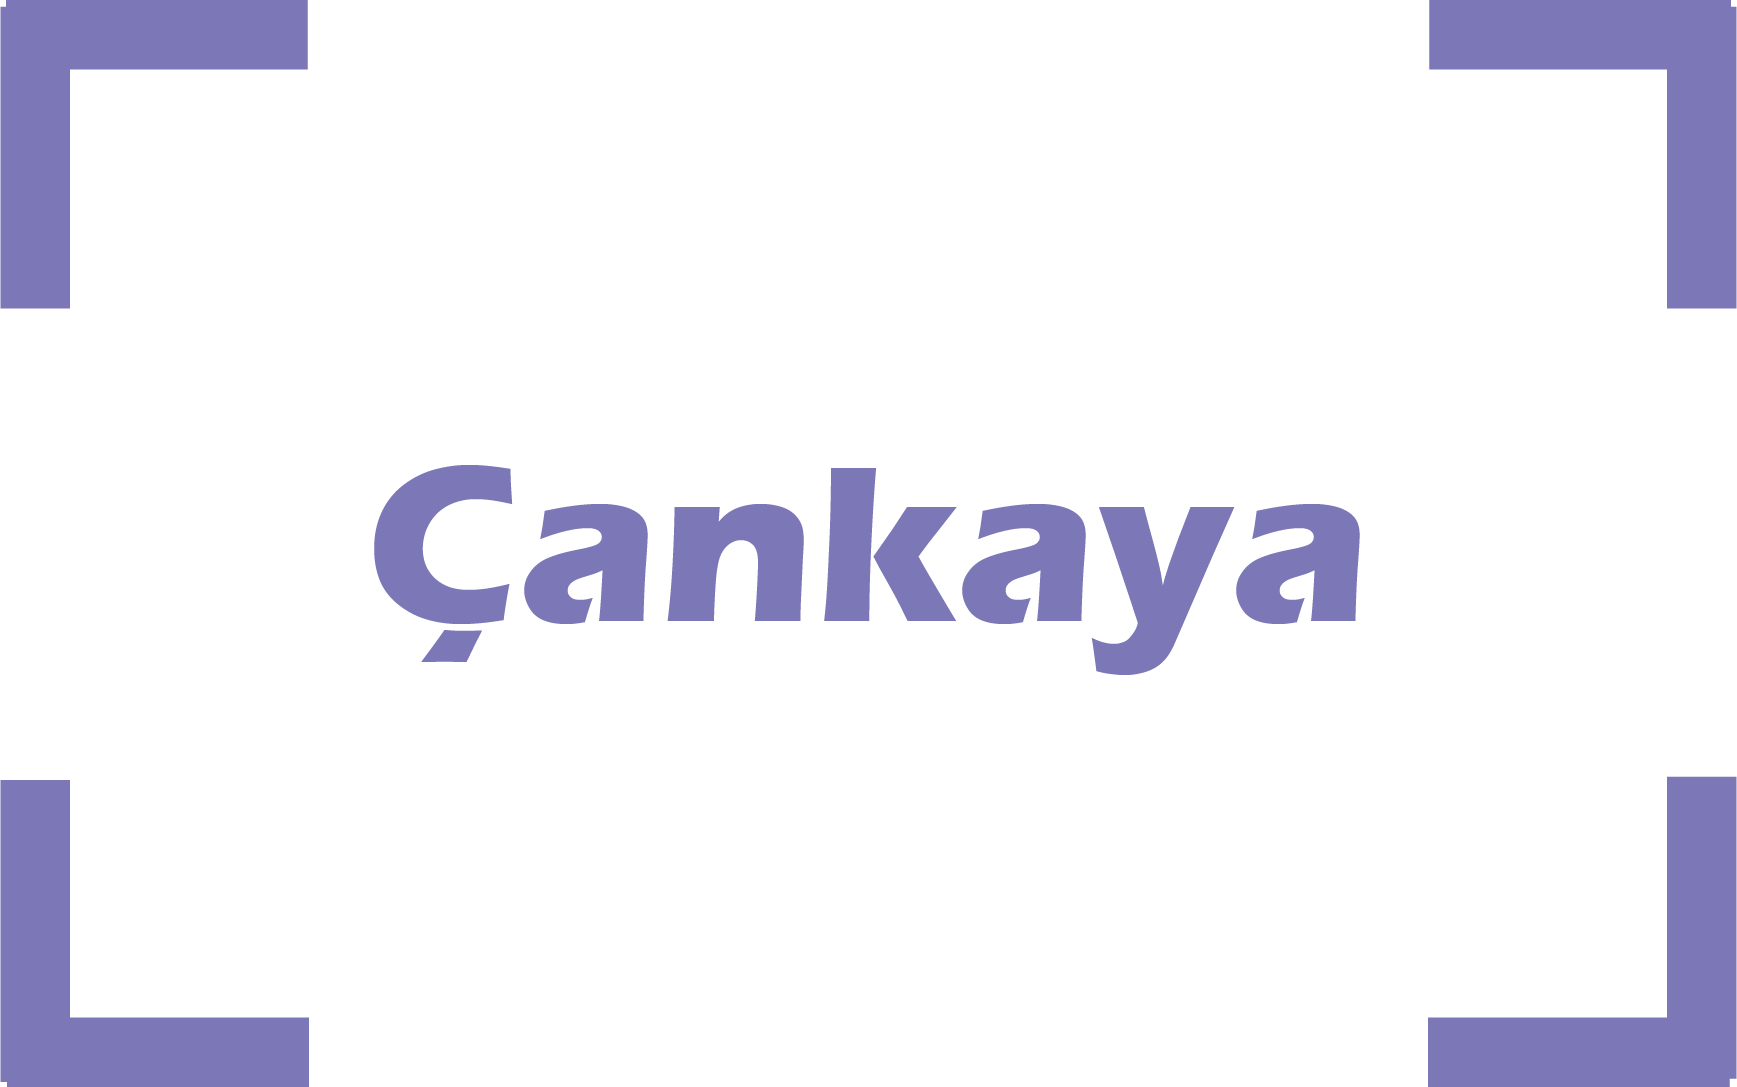 images/Cankaya.png